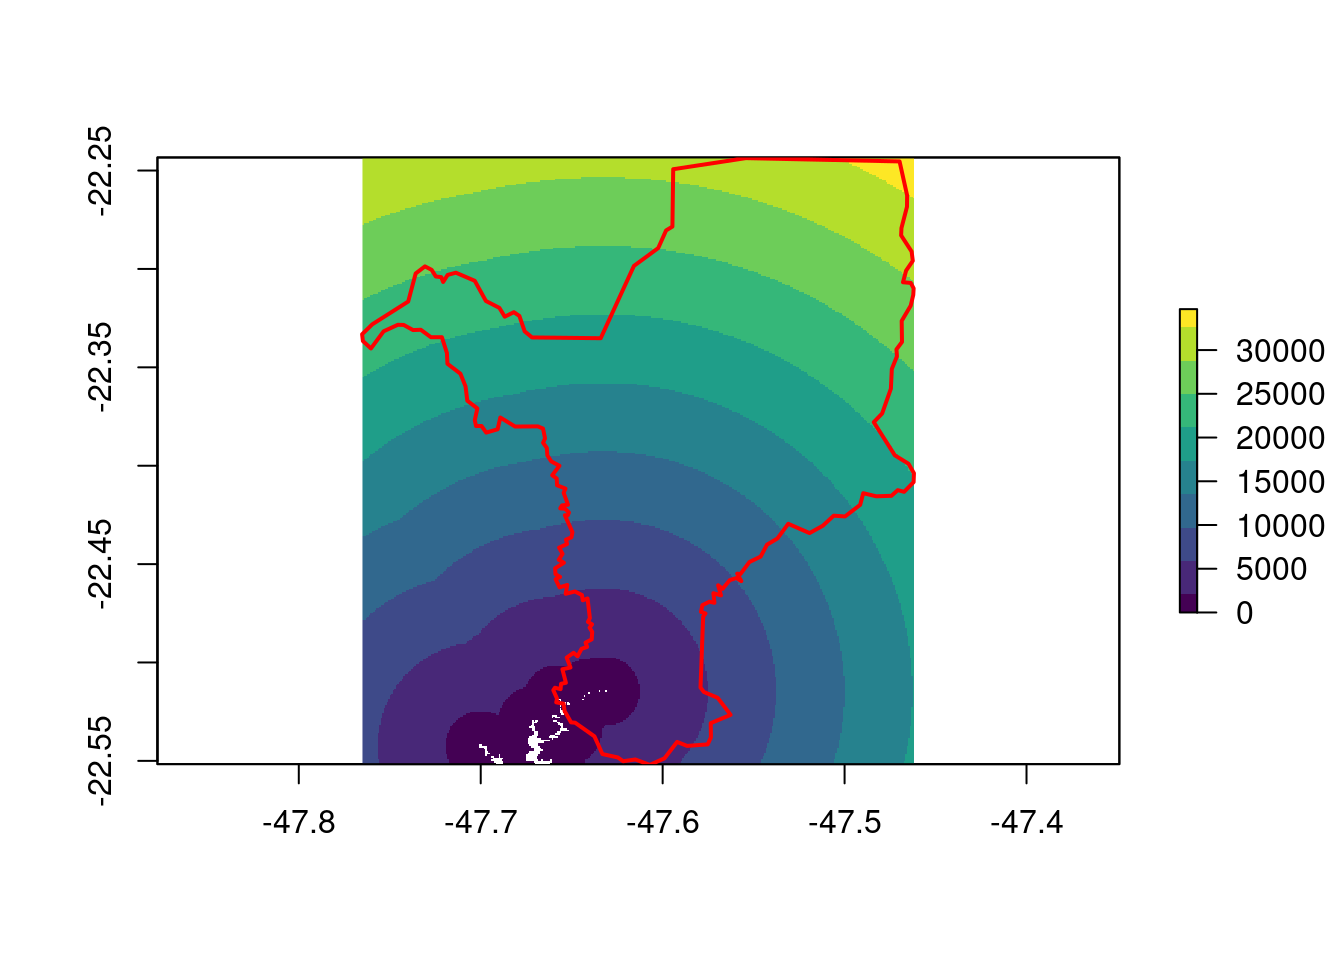 Raster de distância Euclidiana dos pixels abaixo de 500 m de elevação para Rio Claro/SP.